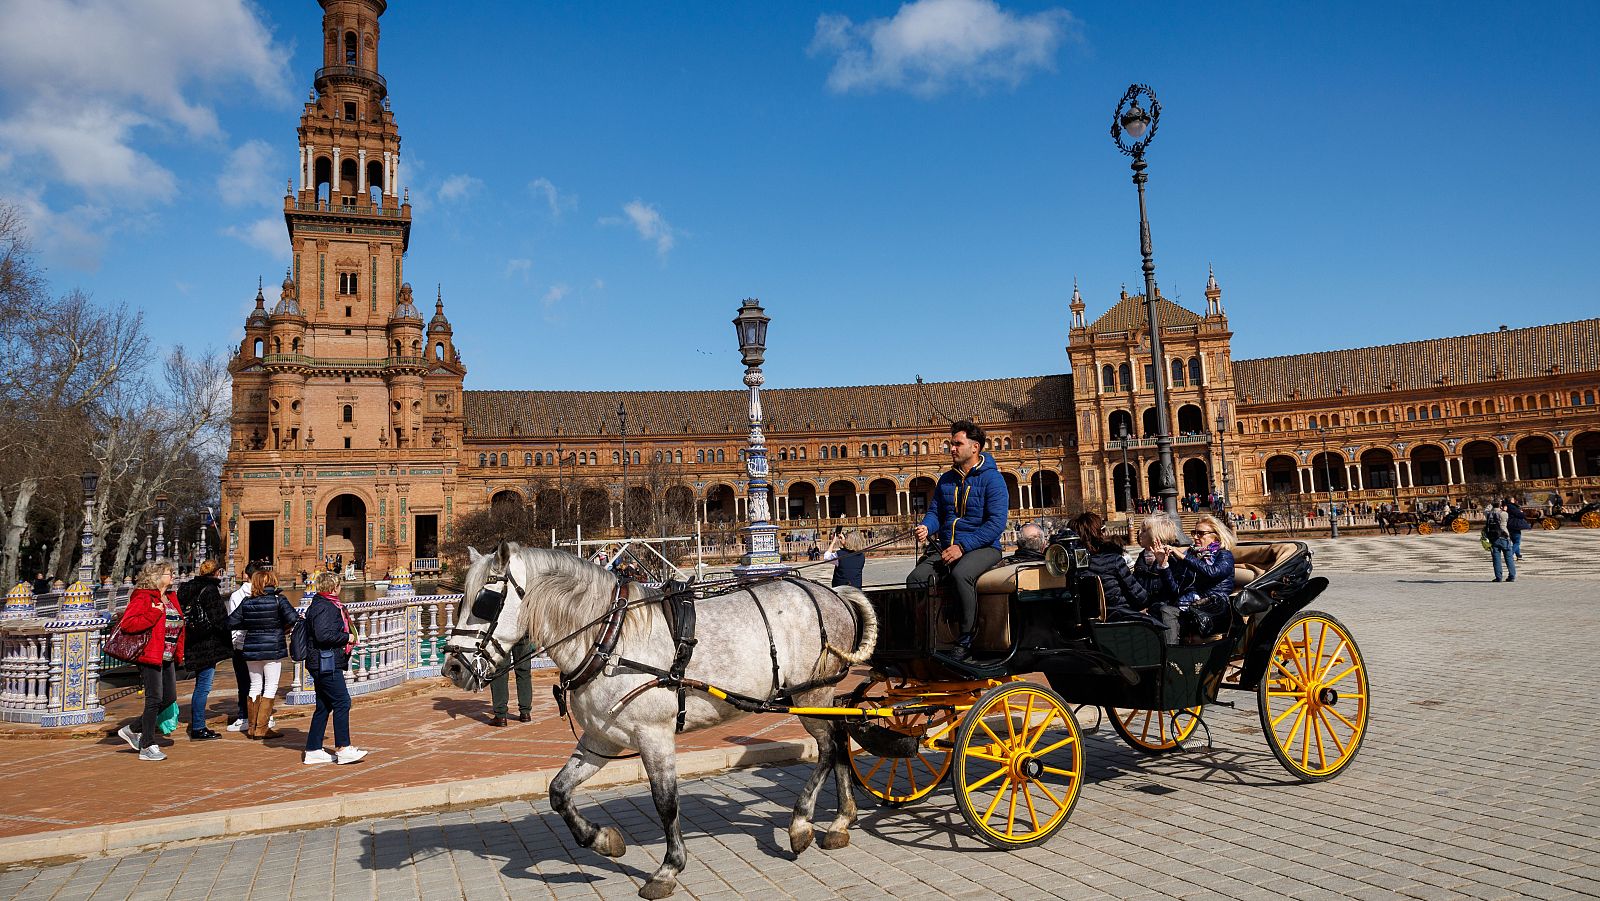 El Ayuntamiento de Sevilla desata la polémica: propone cobrar a los turistas por visitar la plaza de España